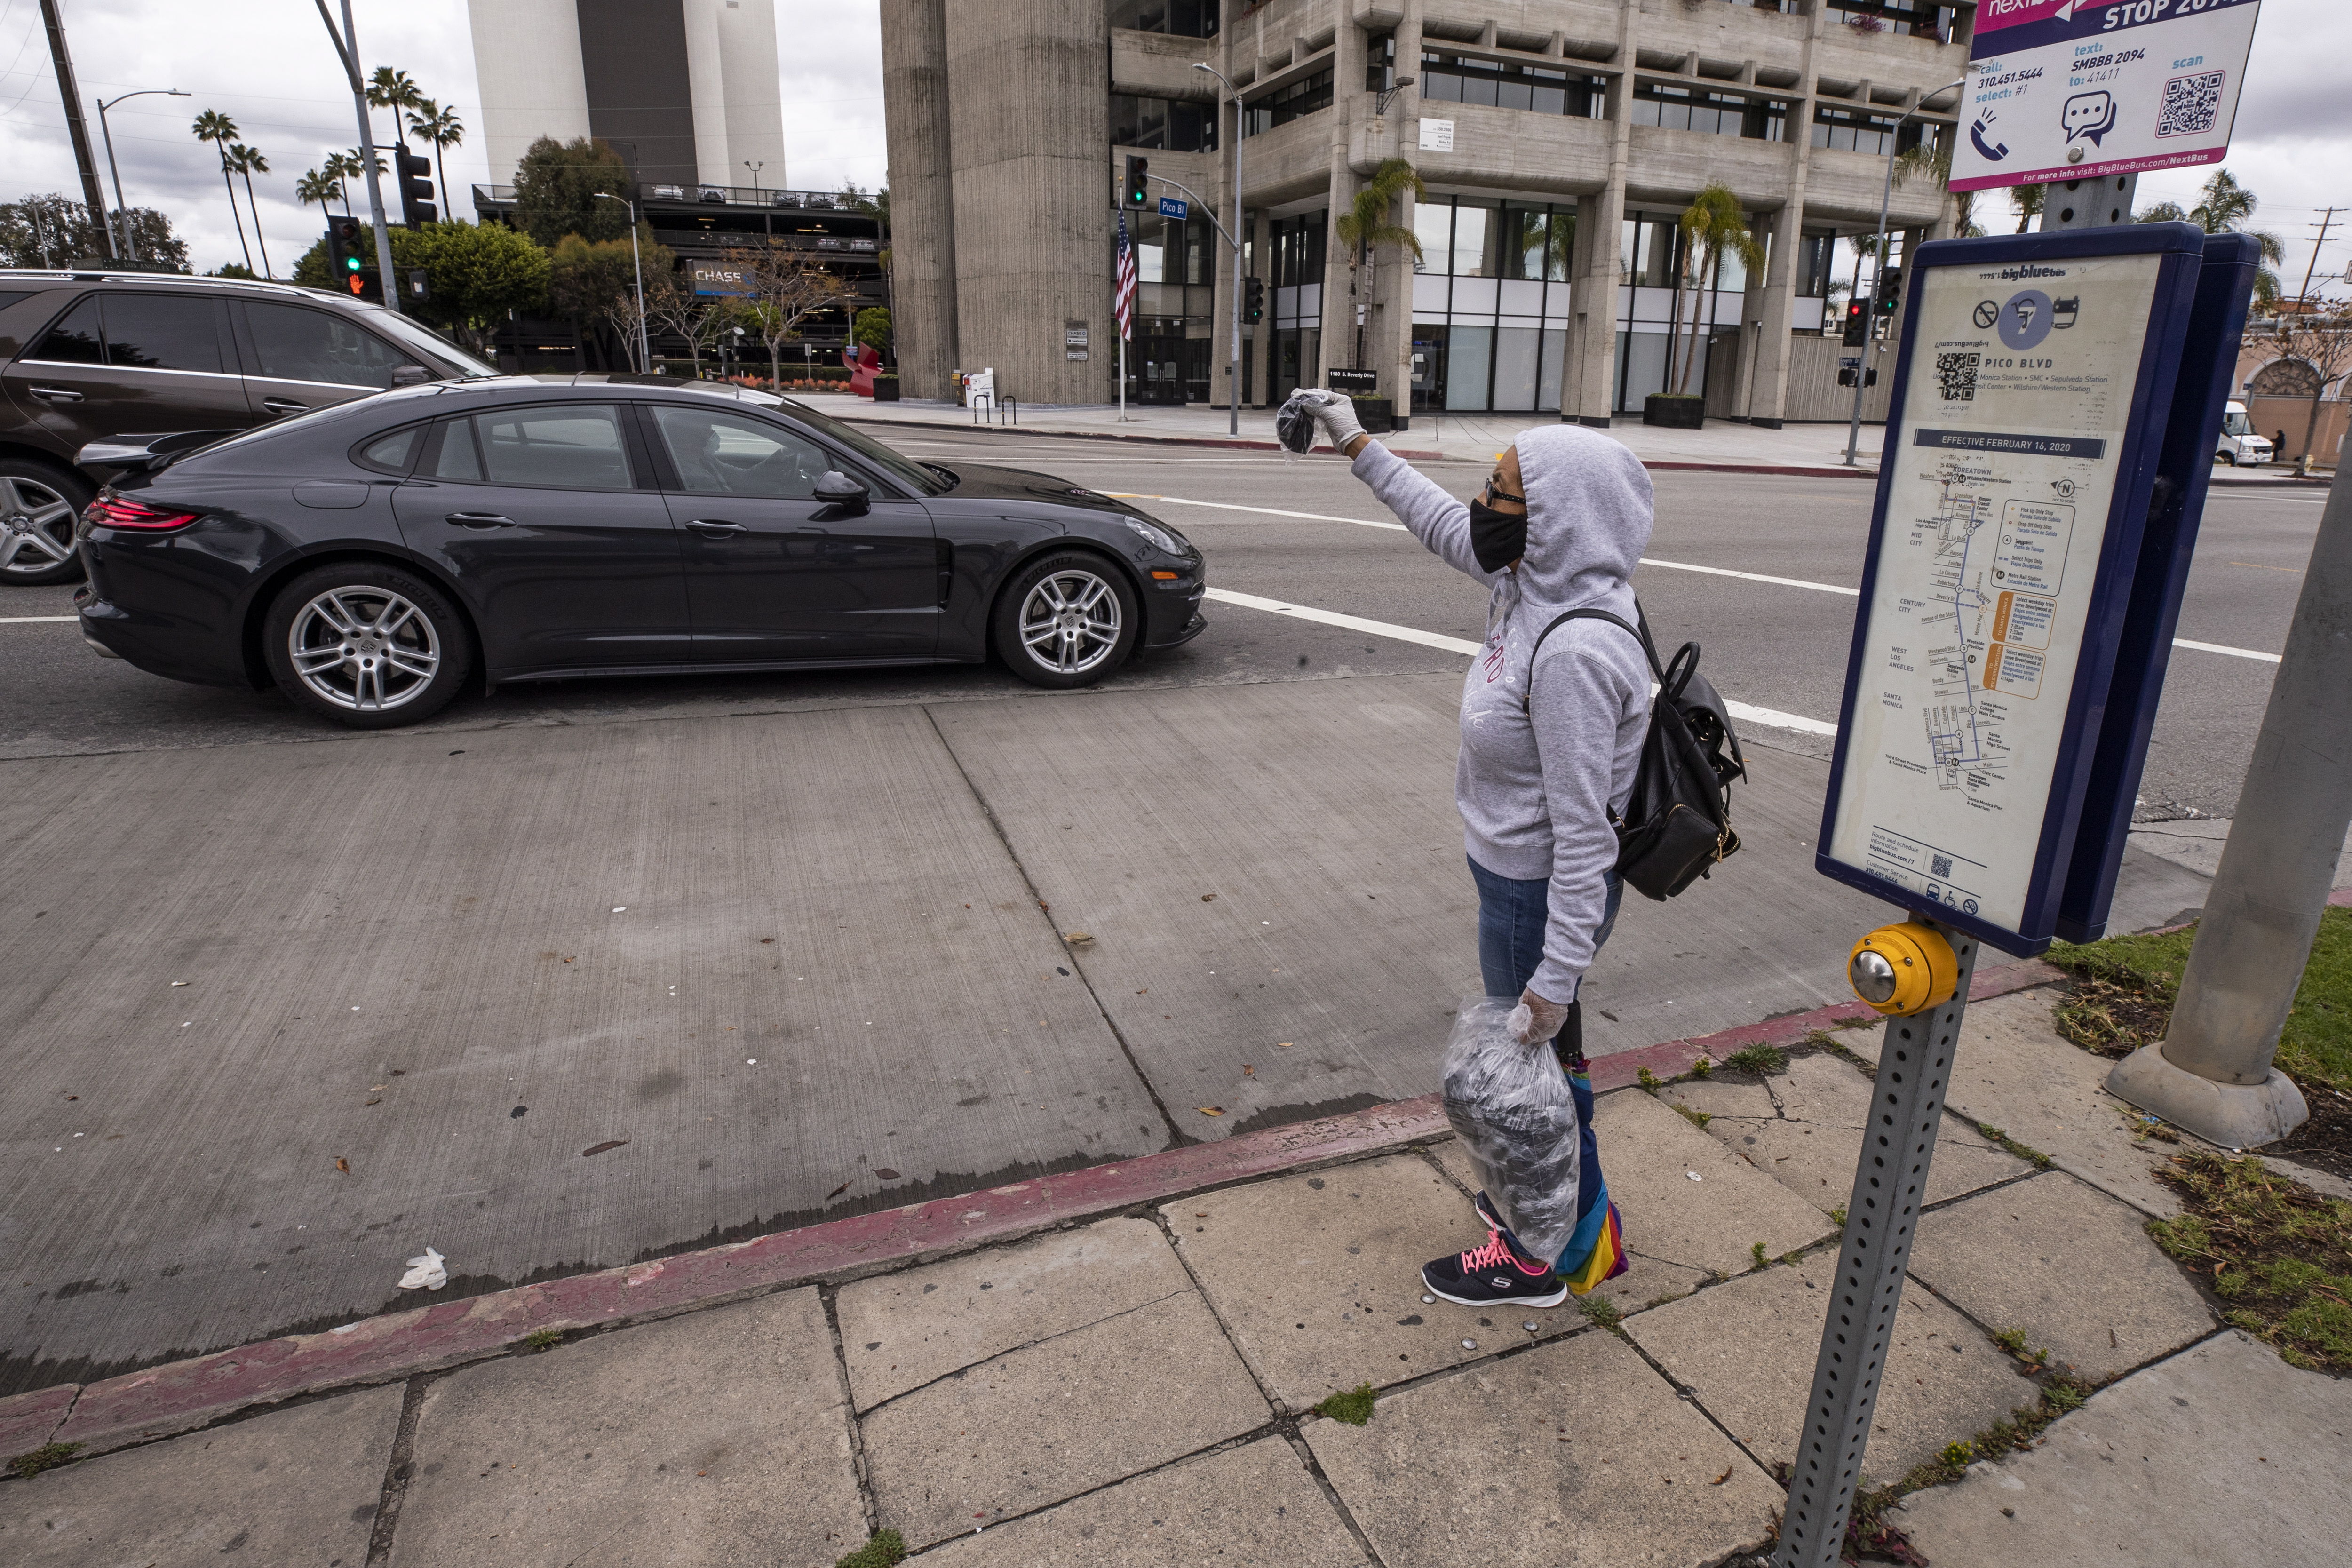 María vende máscaras faciales en la esquina de una calle después de perder su trabajo en medio de la pandemia de coronavirus en Los Ángeles, California, EE. UU. (Foto Prensa Libre: EFE).